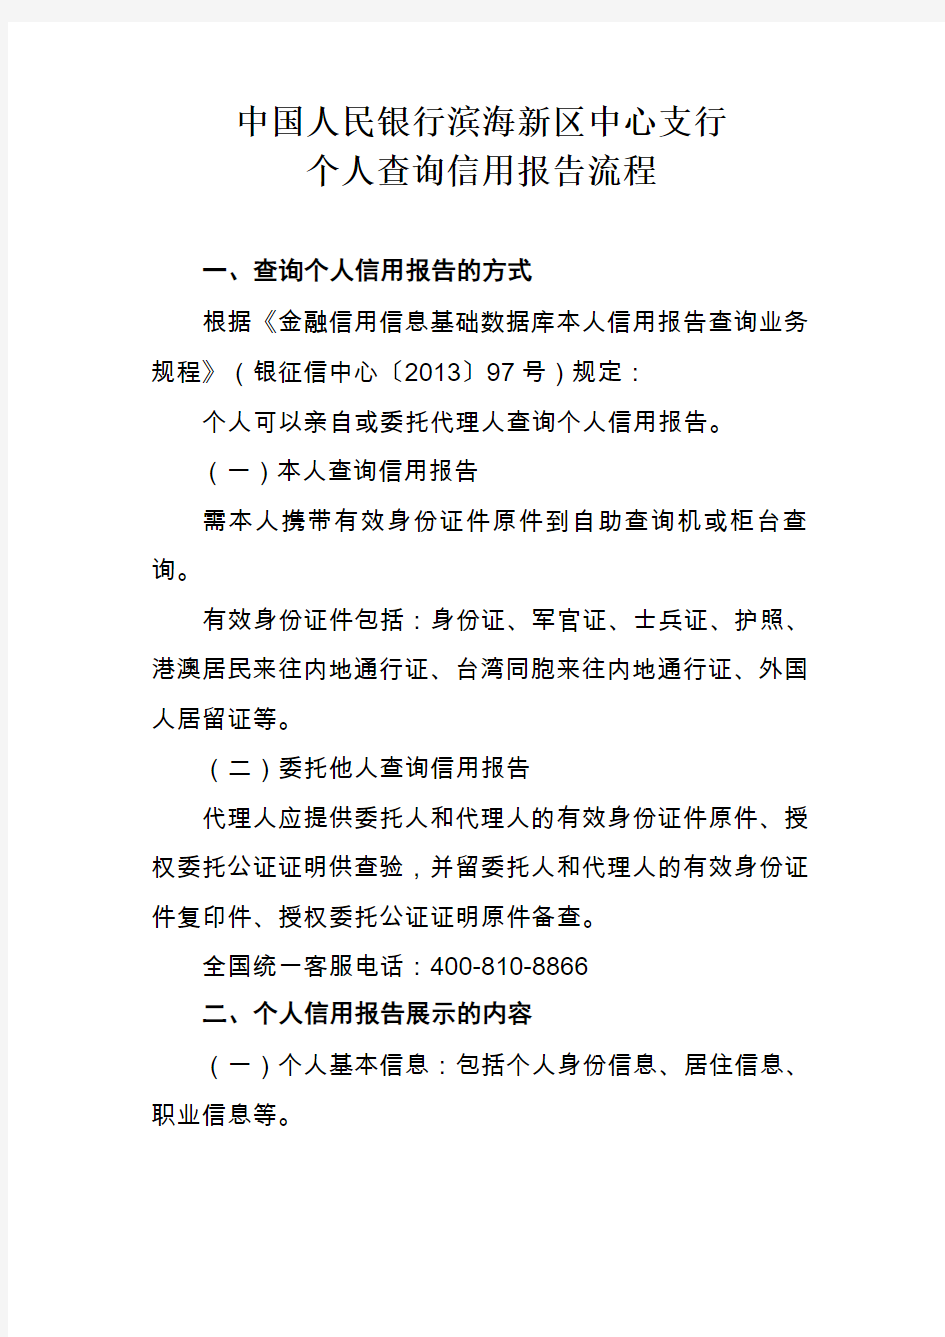 1.中国人民银行滨海新区中心支行个人查询信用报告流程